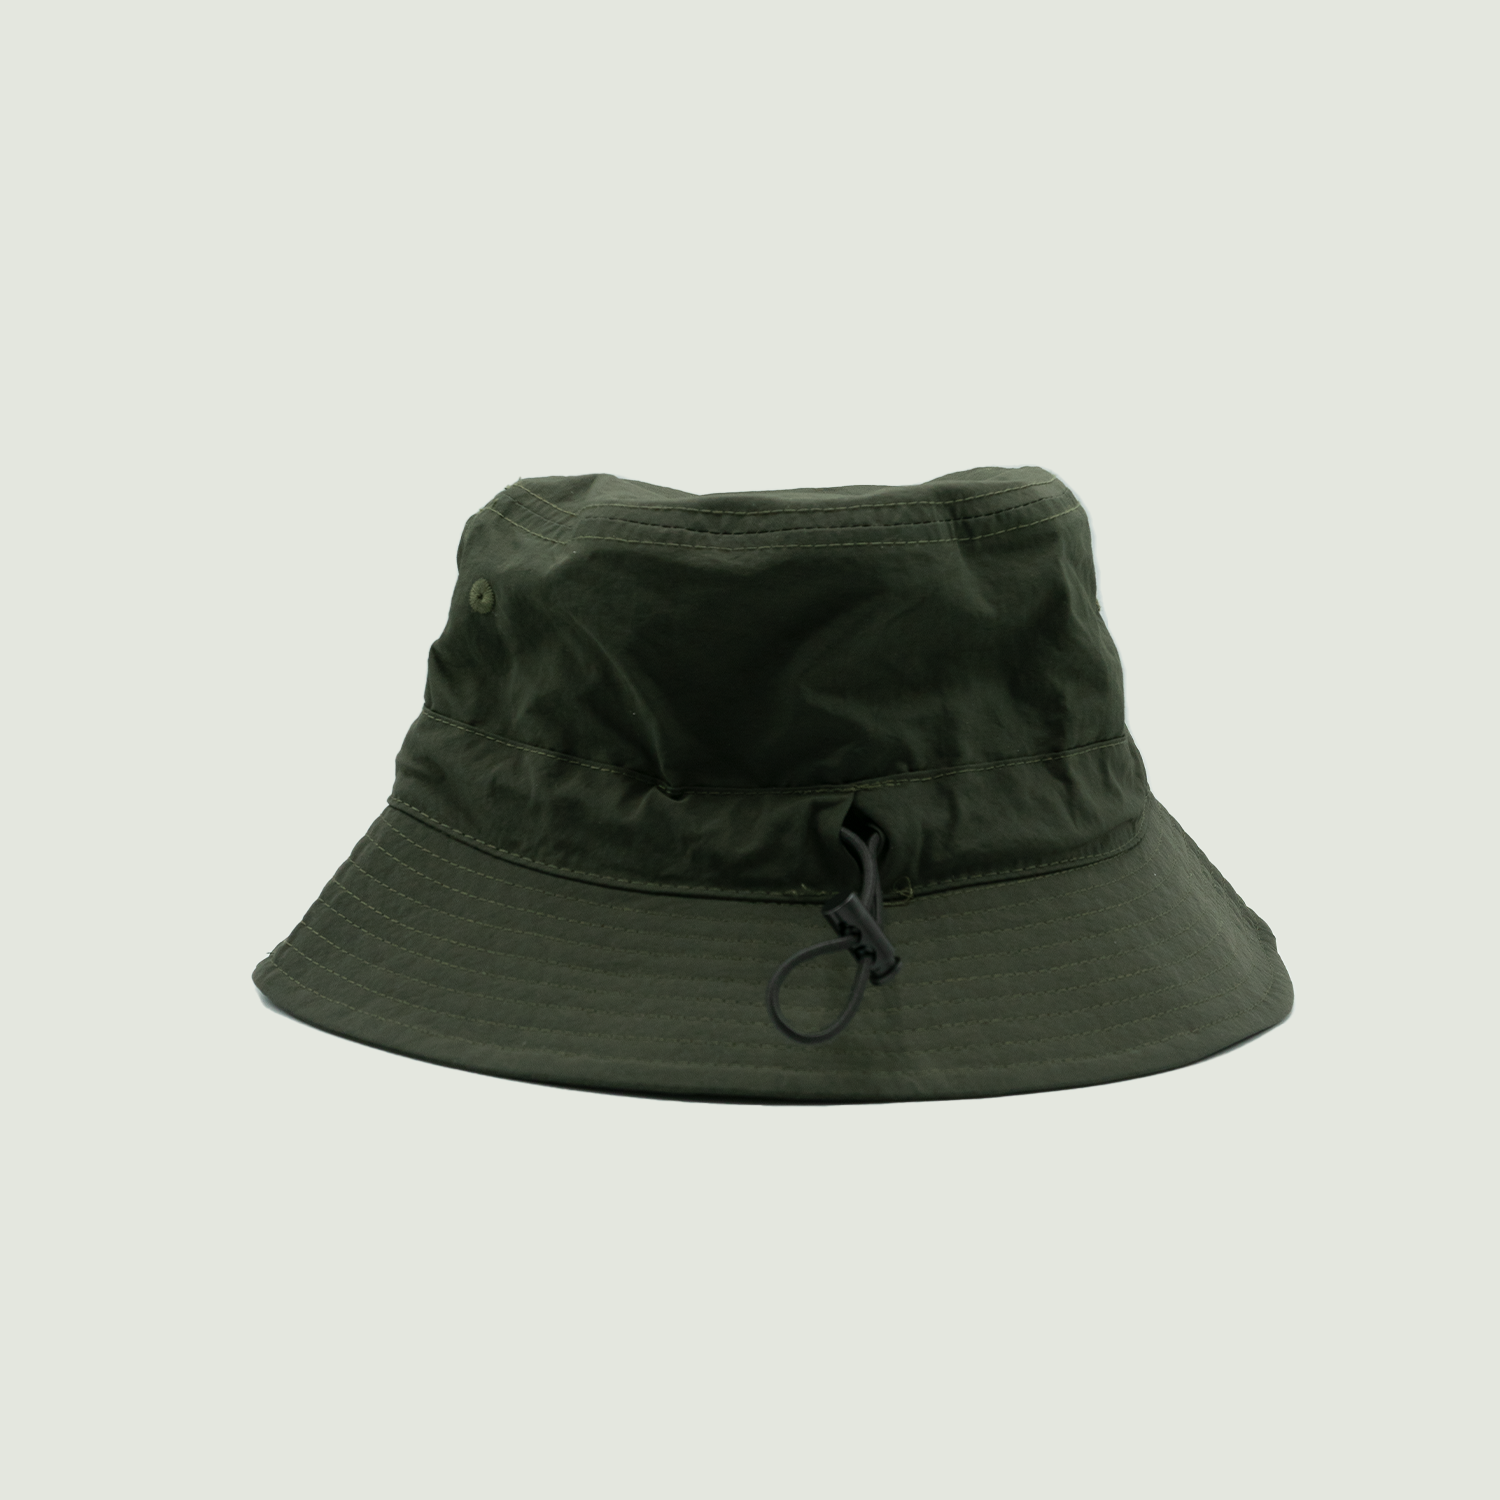 Fishing Club SVNR Bucket Hat in Army Green